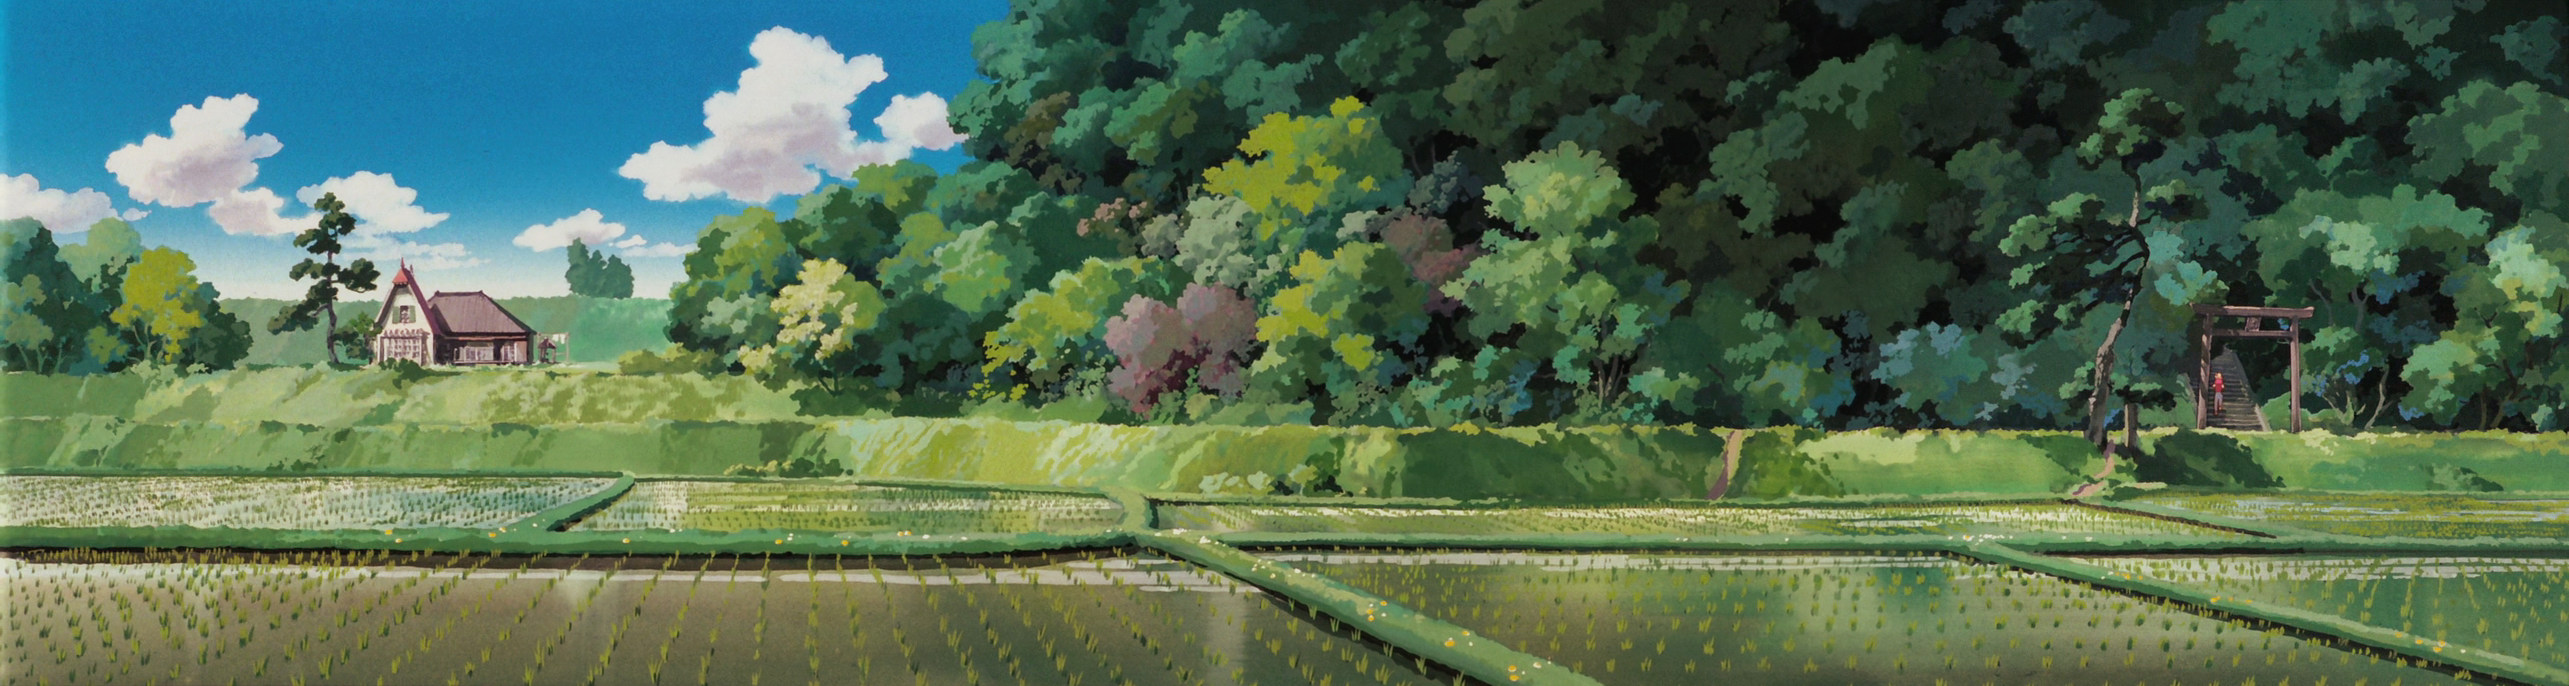 Beautiful Studio Ghibli Wallpaper